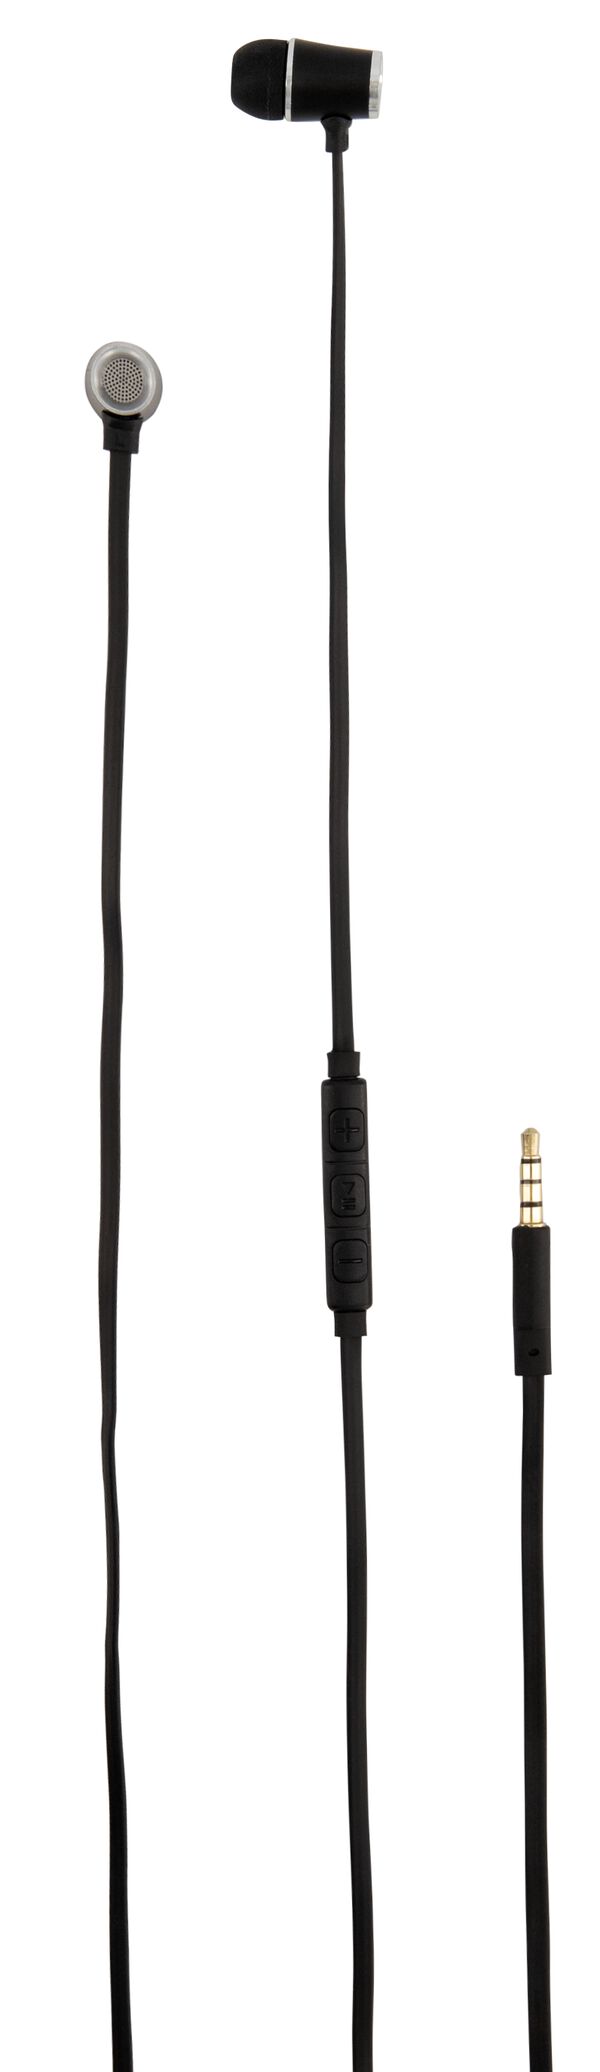 écouteurs intra-auriculaires qualité supérieure noir - 39620022 - HEMA